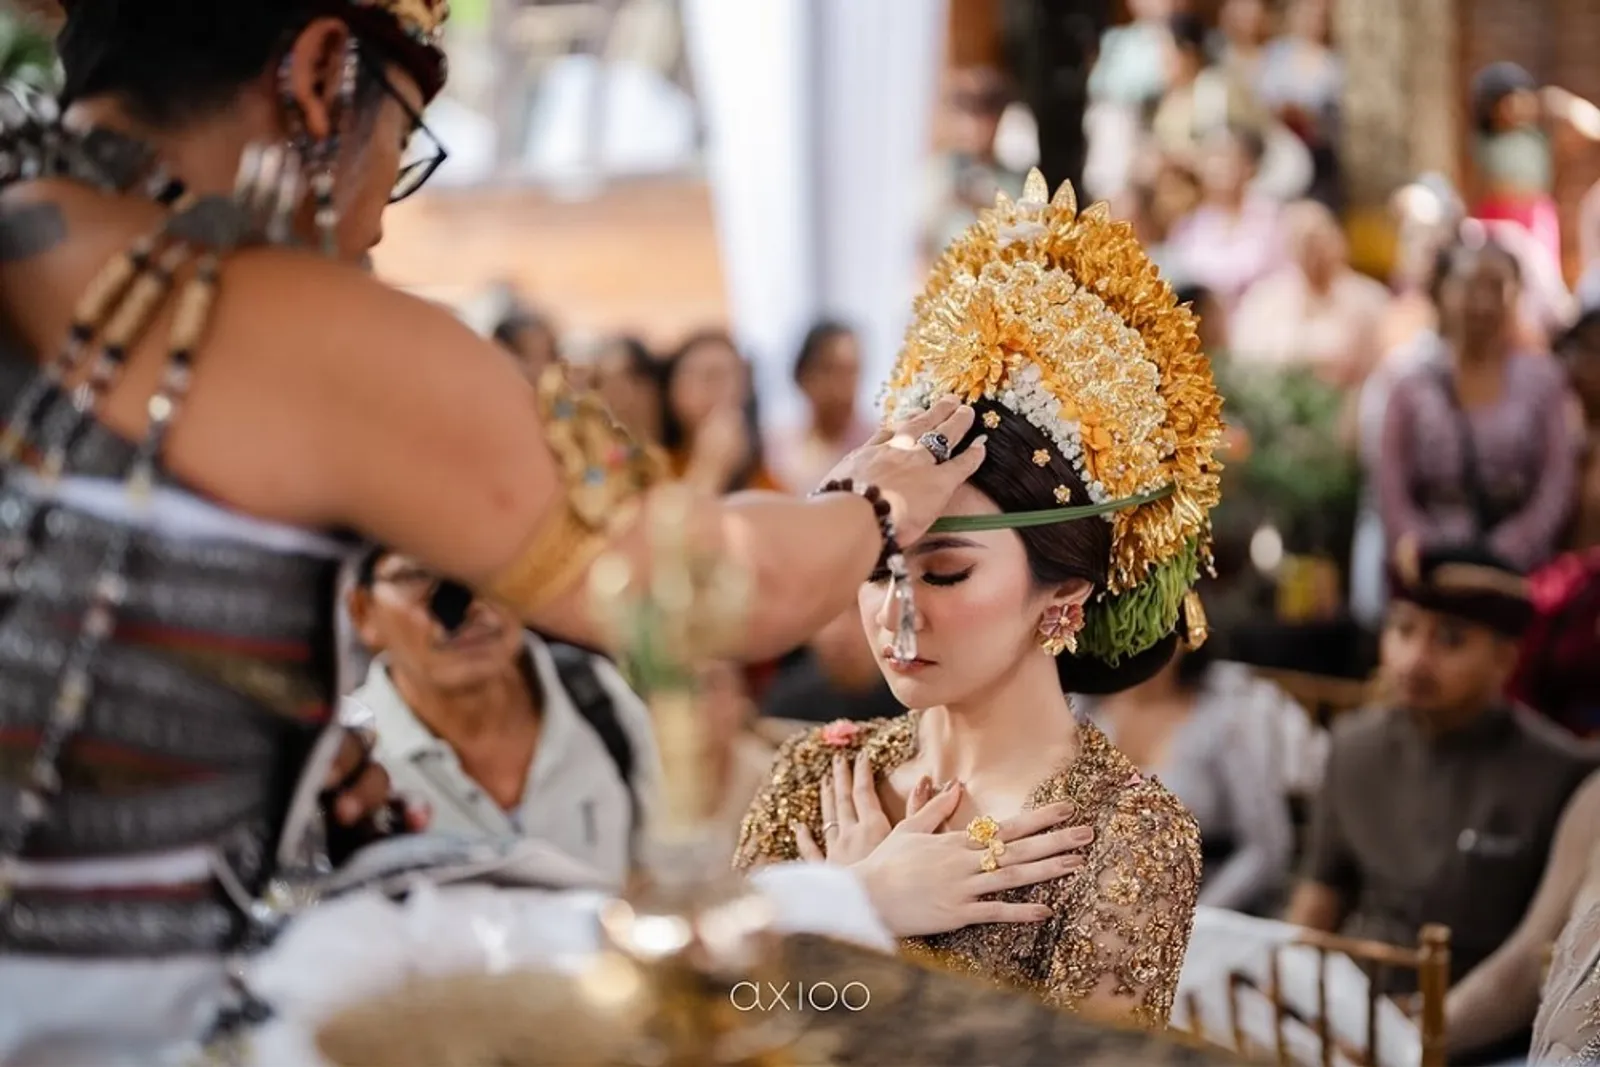 5 Fakta Upacara Adat Bali Rizky Febian dan Mahalini Jelang Pernikahan